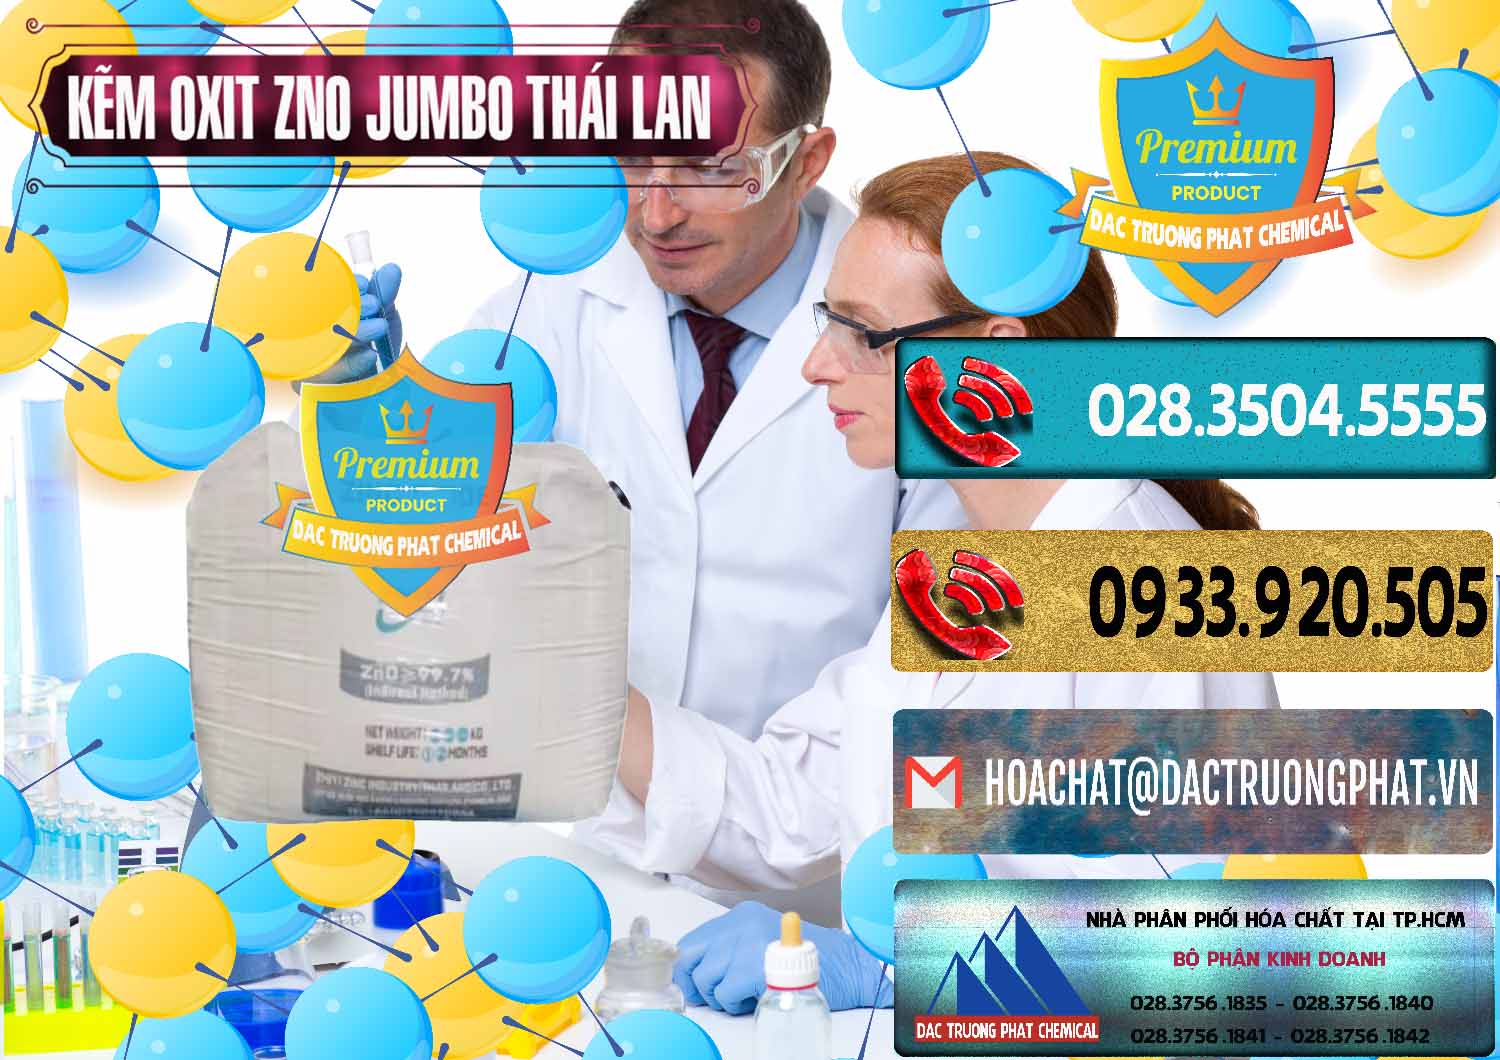 Nơi kinh doanh _ bán Zinc Oxide - Bột Kẽm Oxit ZNO Jumbo Bành Thái Lan Thailand - 0370 - Cty chuyên cung ứng - phân phối hóa chất tại TP.HCM - hoachatdetnhuom.com